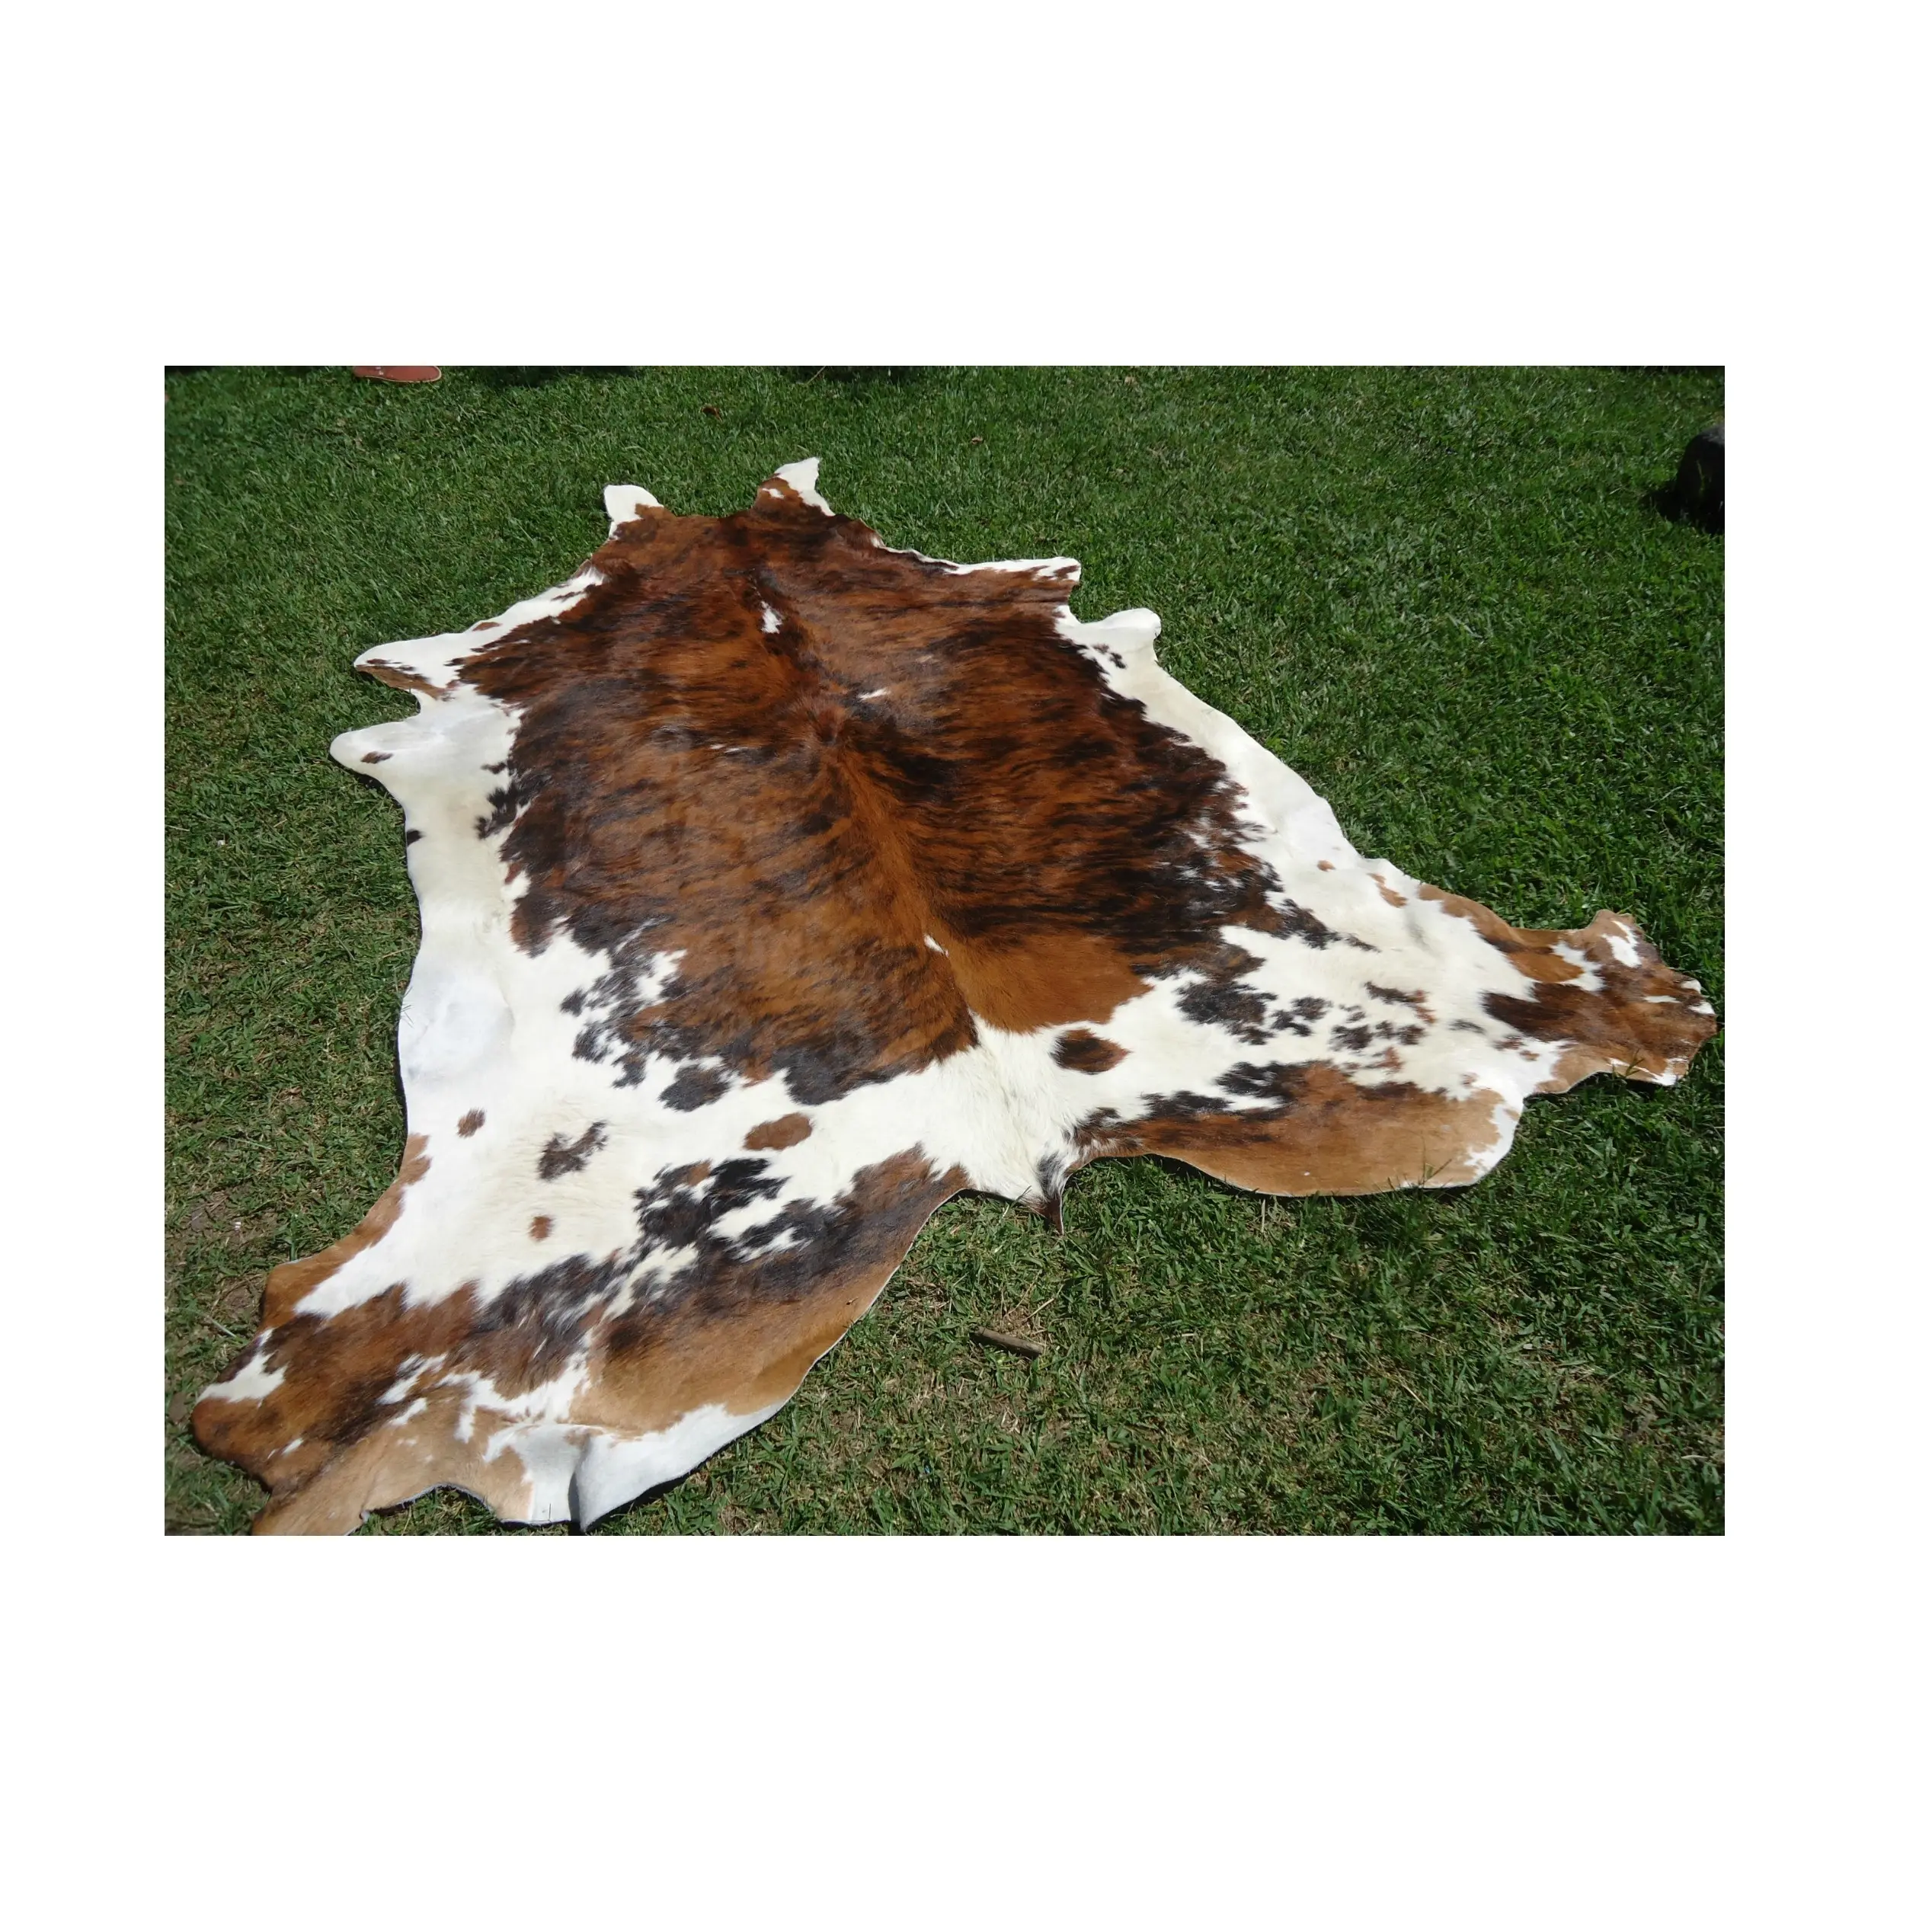 Venda quente Preço De Seco E Molhado Salgado Vaca Esconde/Skins/Animal Gado Esconde em Estoque A Granel Para Entrega